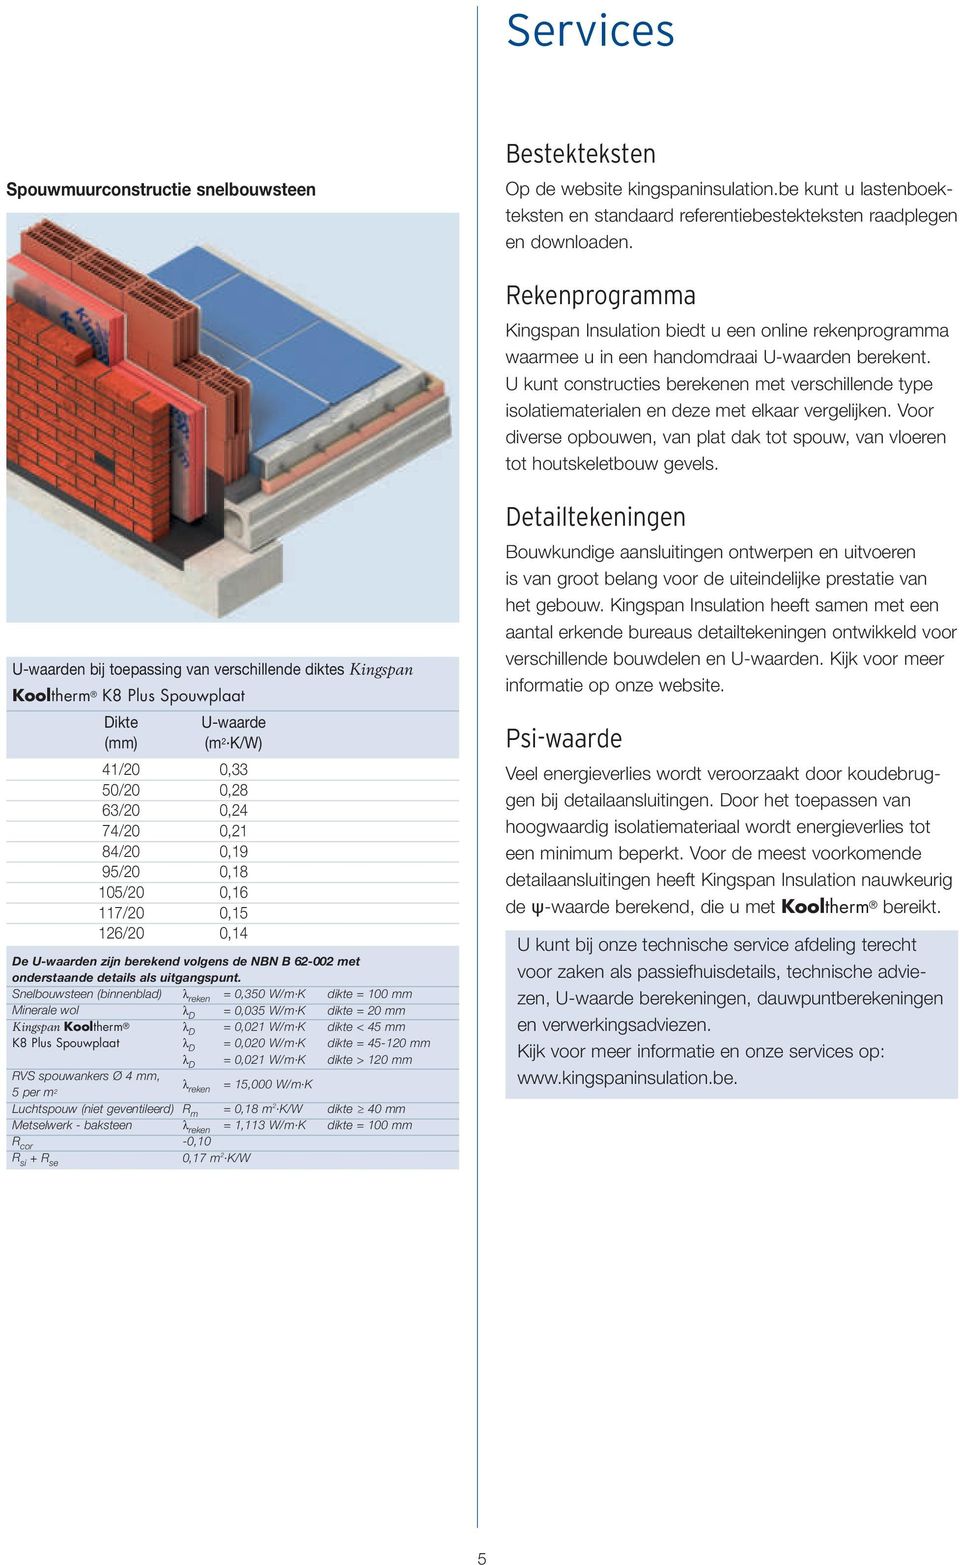 U kunt constructies berekenen met verschillende type isolatiematerialen en deze met elkaar vergelijken. Voor diverse opbouwen, van plat dak tot spouw, van vloeren tot houtskeletbouw gevels.